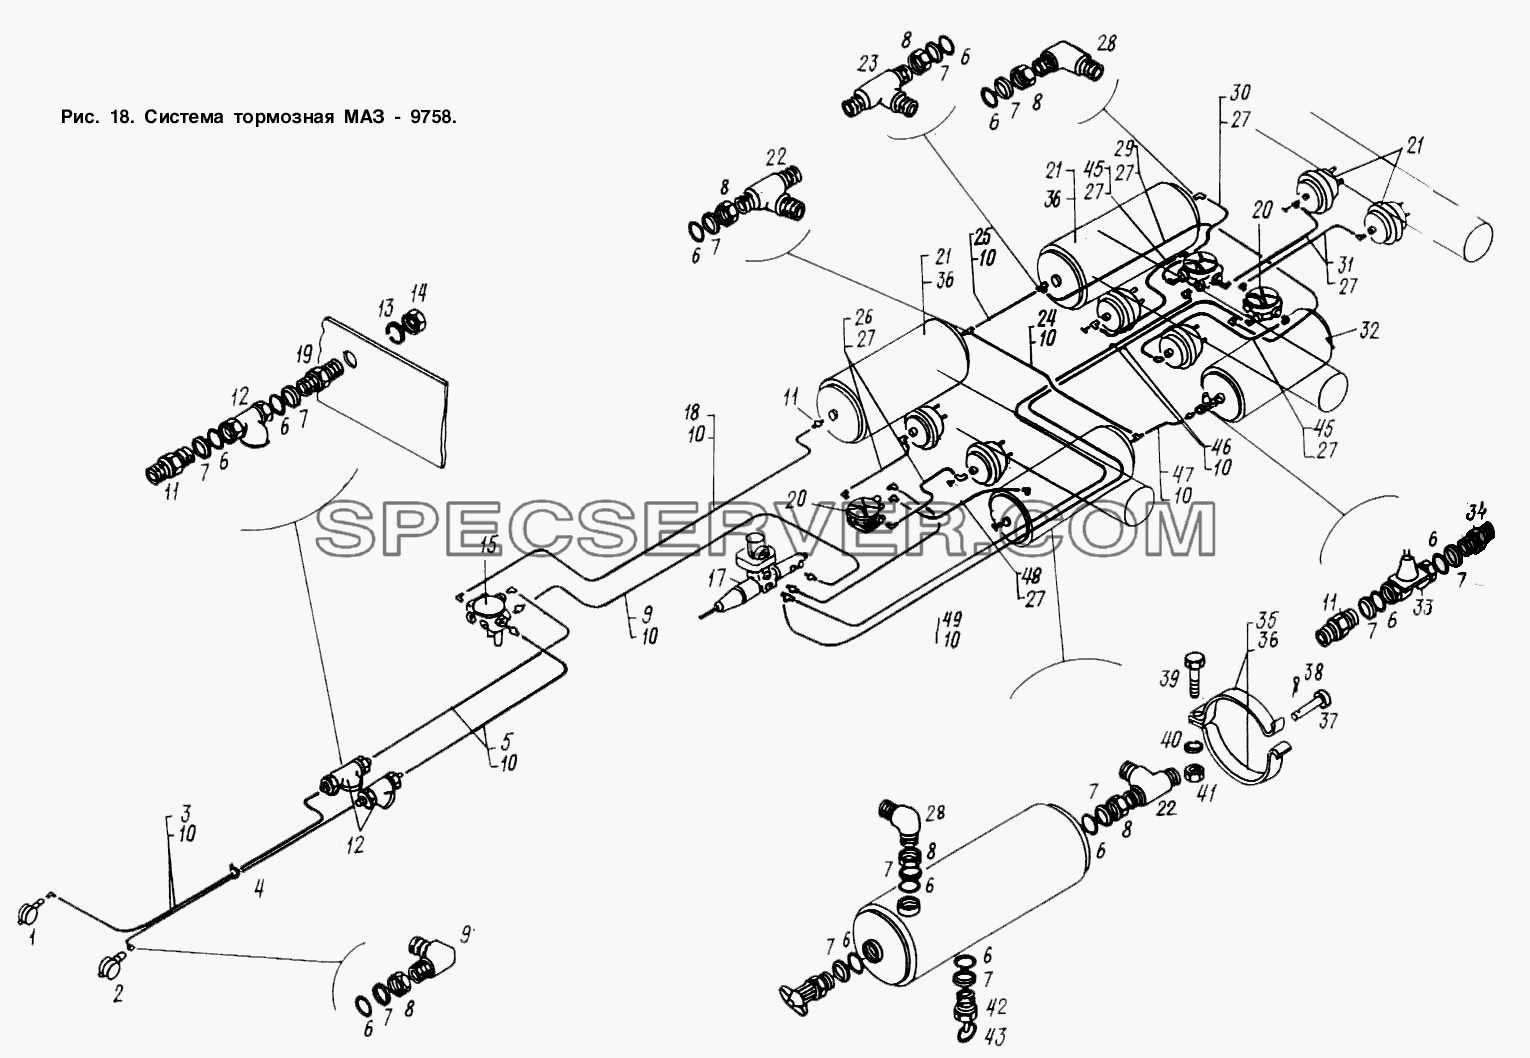 Система тормозная МАЗ 9758 для МАЗ-9758-30 (список запасных частей)